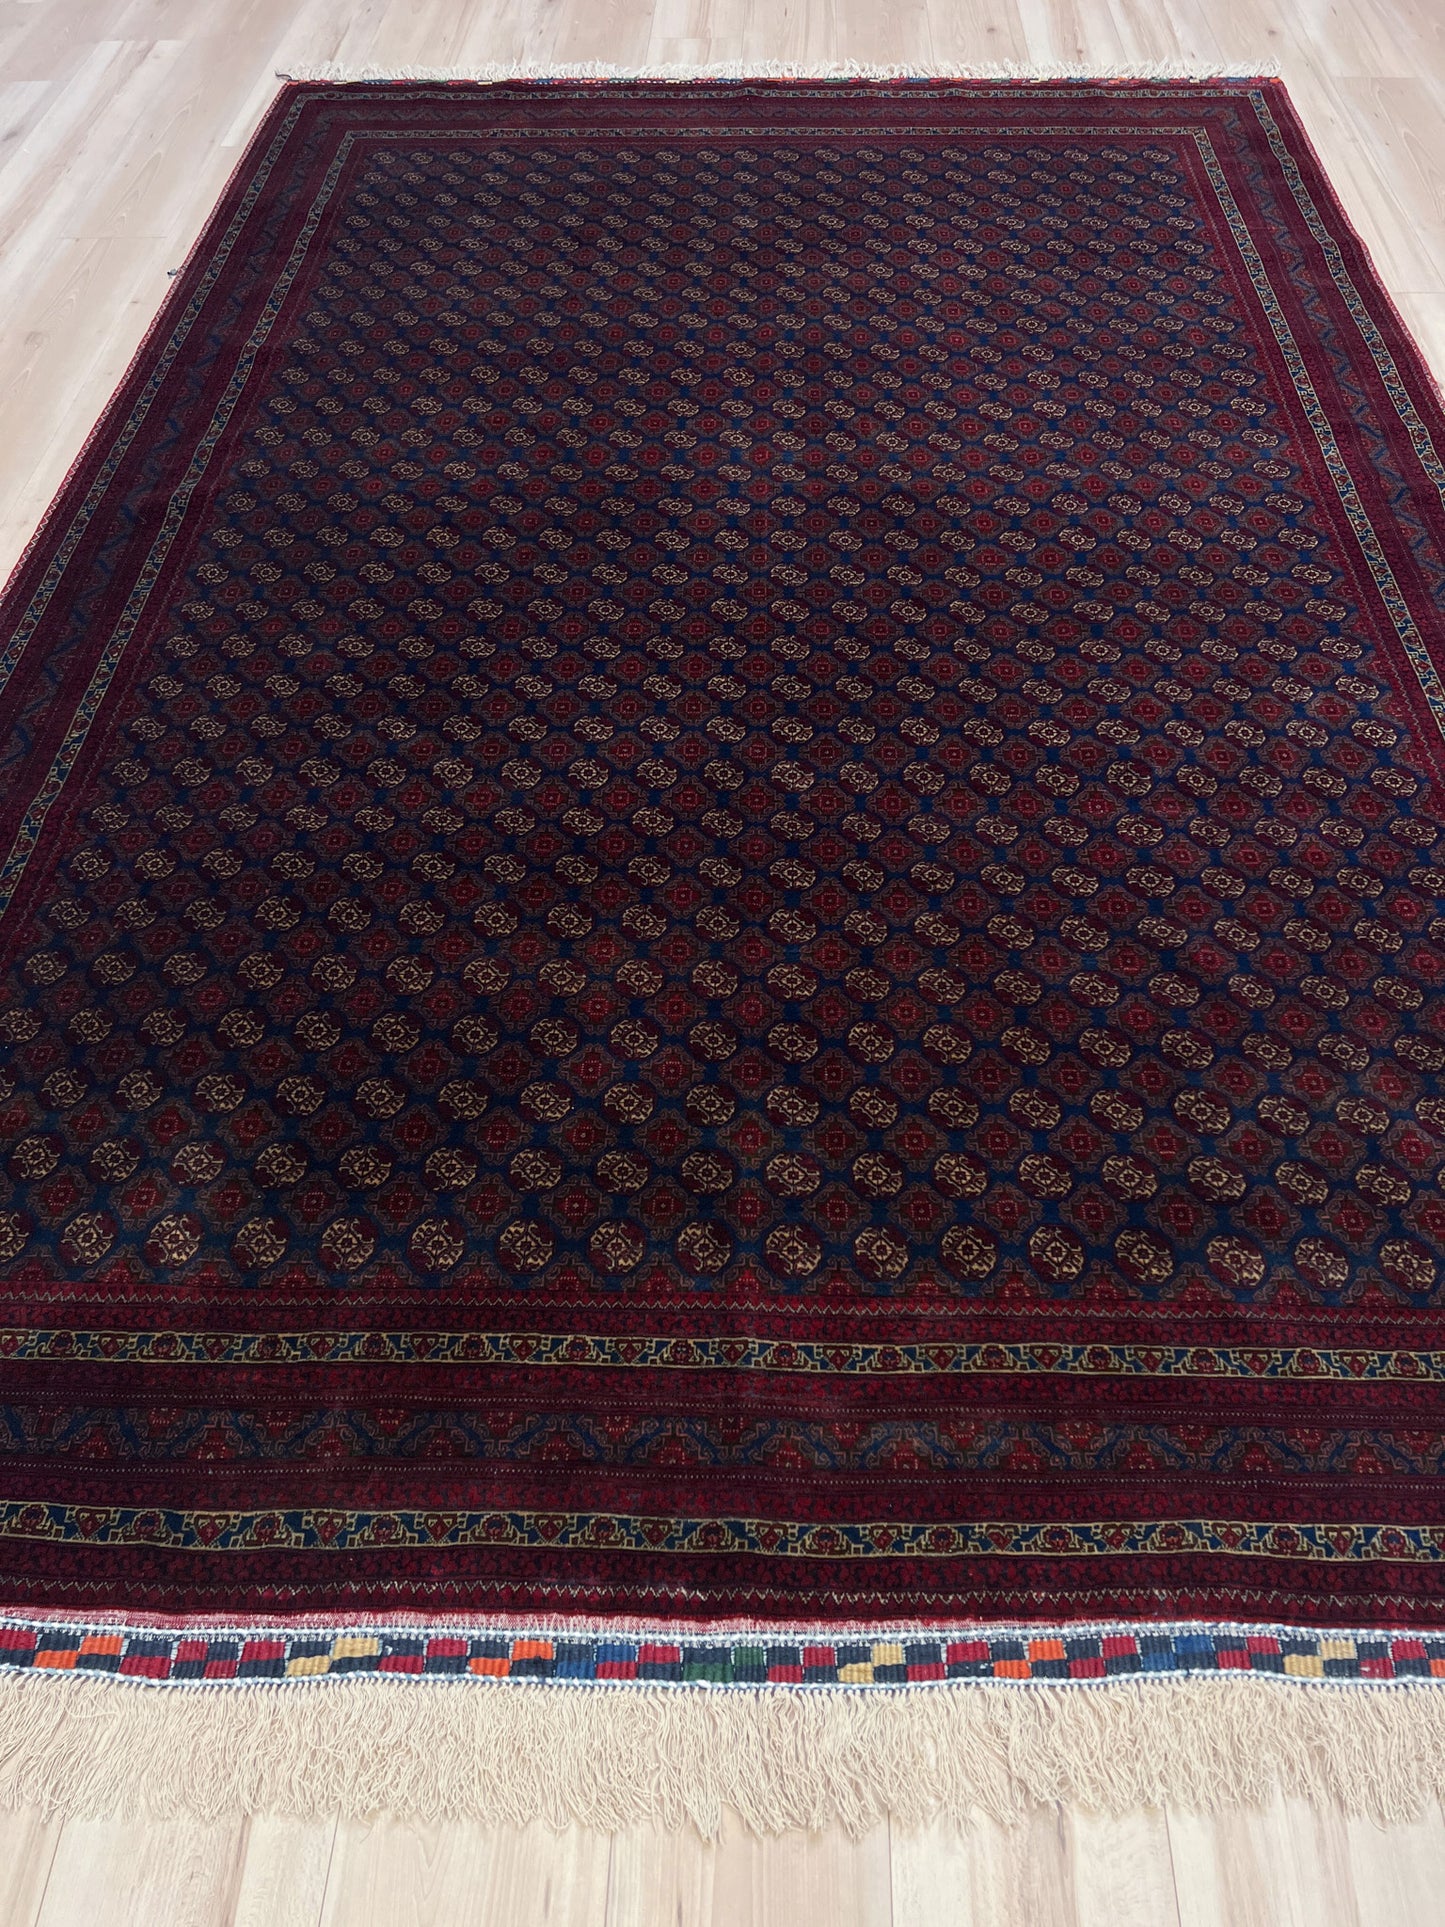 Soft Turkmen rug for living room, bedroom, dining. Oriental rug store san mateo, palo alto, berkeley. Buy oriental rug shop onlline. 